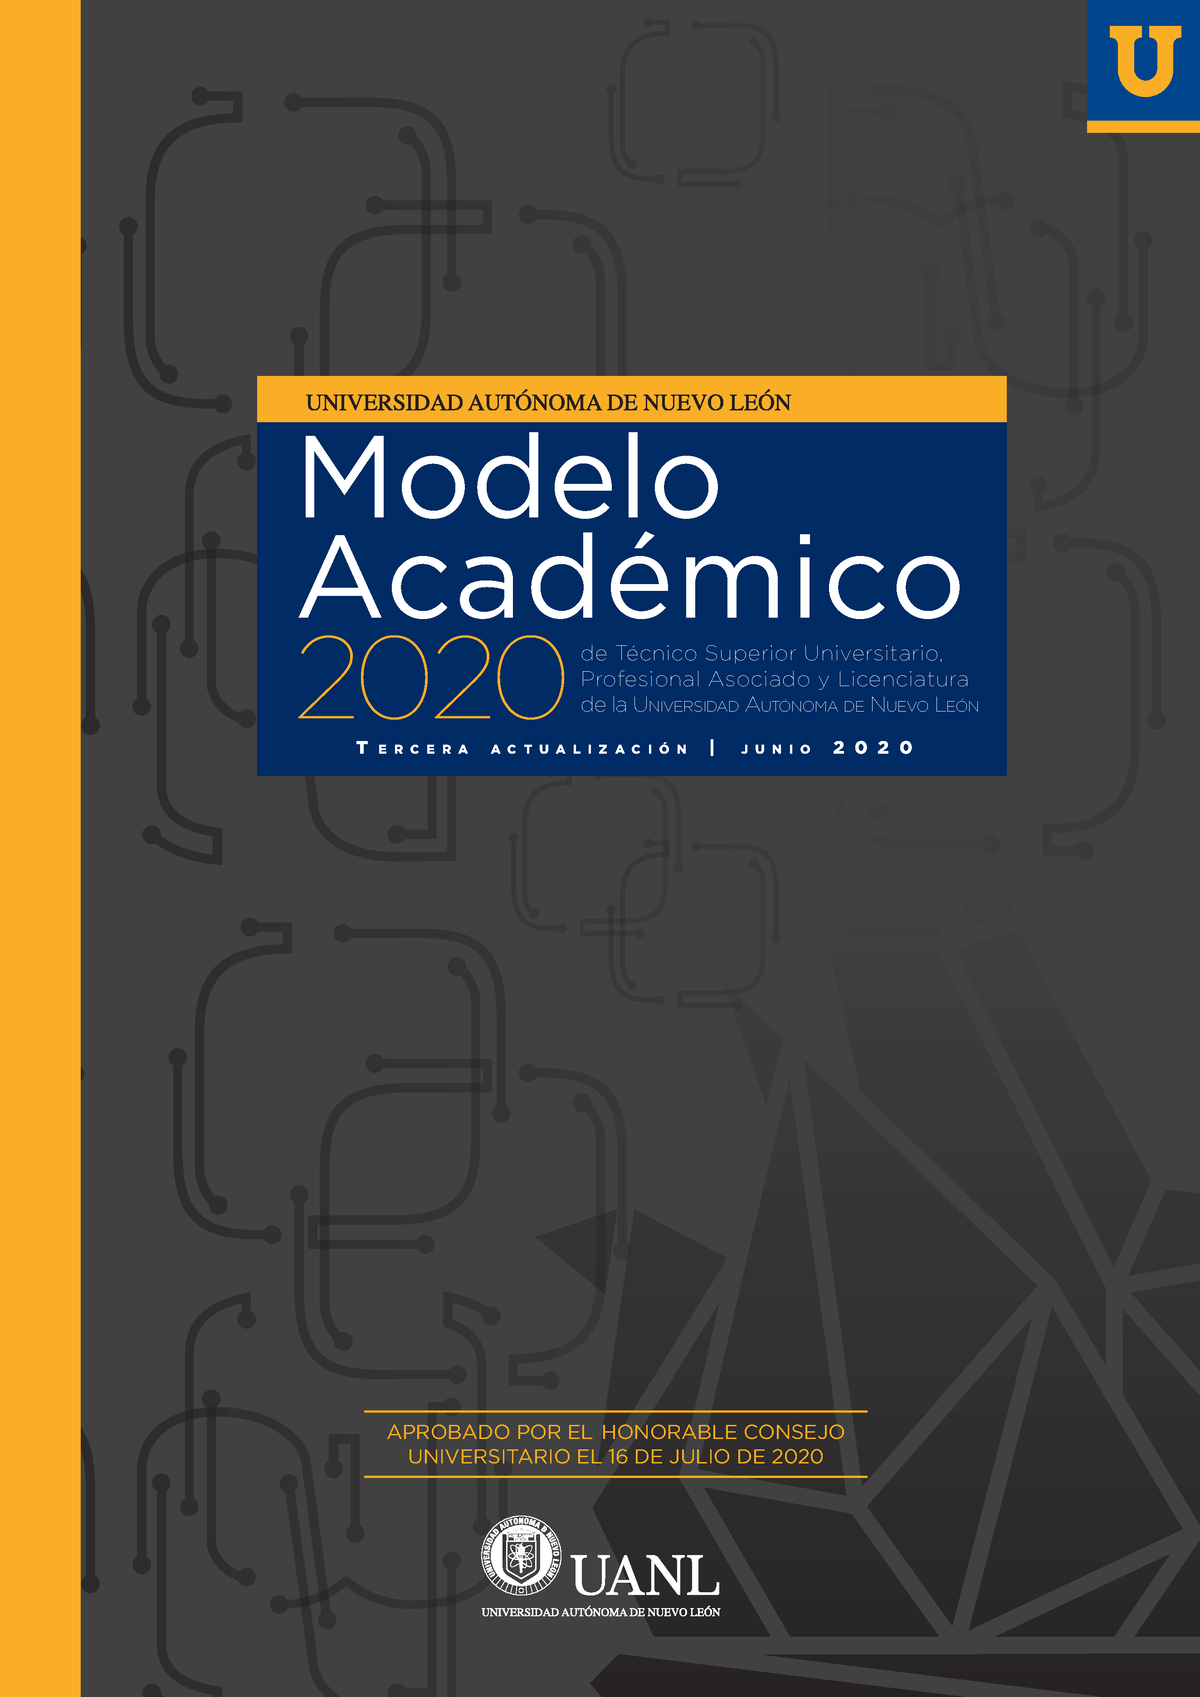 Modeloacdemico 2020tsu - Modelo Académico 2020 T E R C E R A A C T U A L I  Z A C I Ó N | J U N I O 2 - Studocu